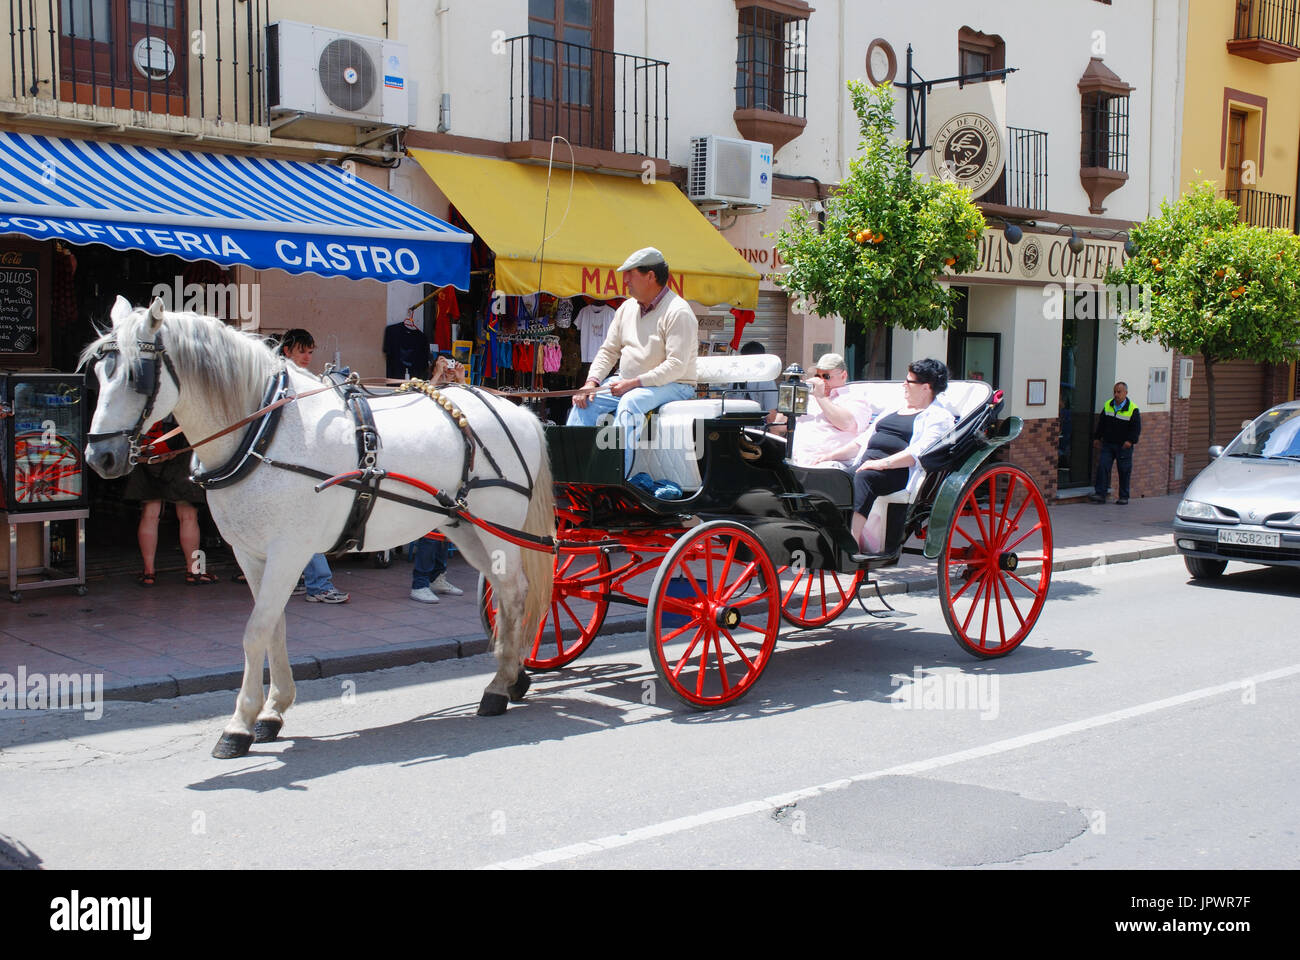 Touristic horse-drawn carriage. Ronda, Malaga province, Spain. Stock Photo